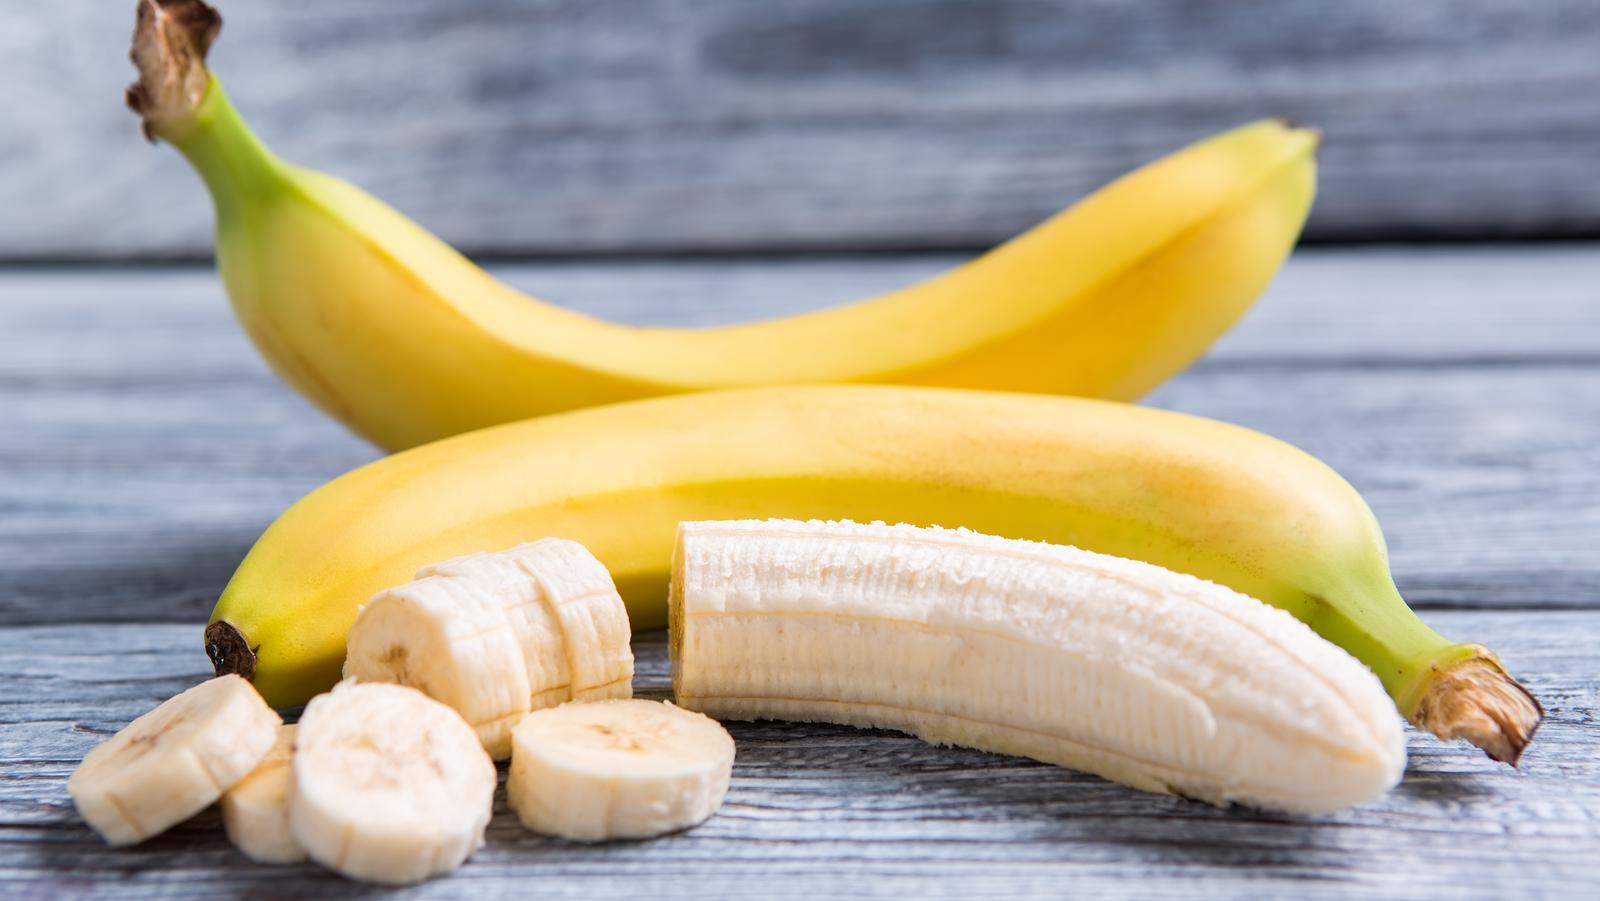 Milyen gyógyhatásai vannak a banánnak? 